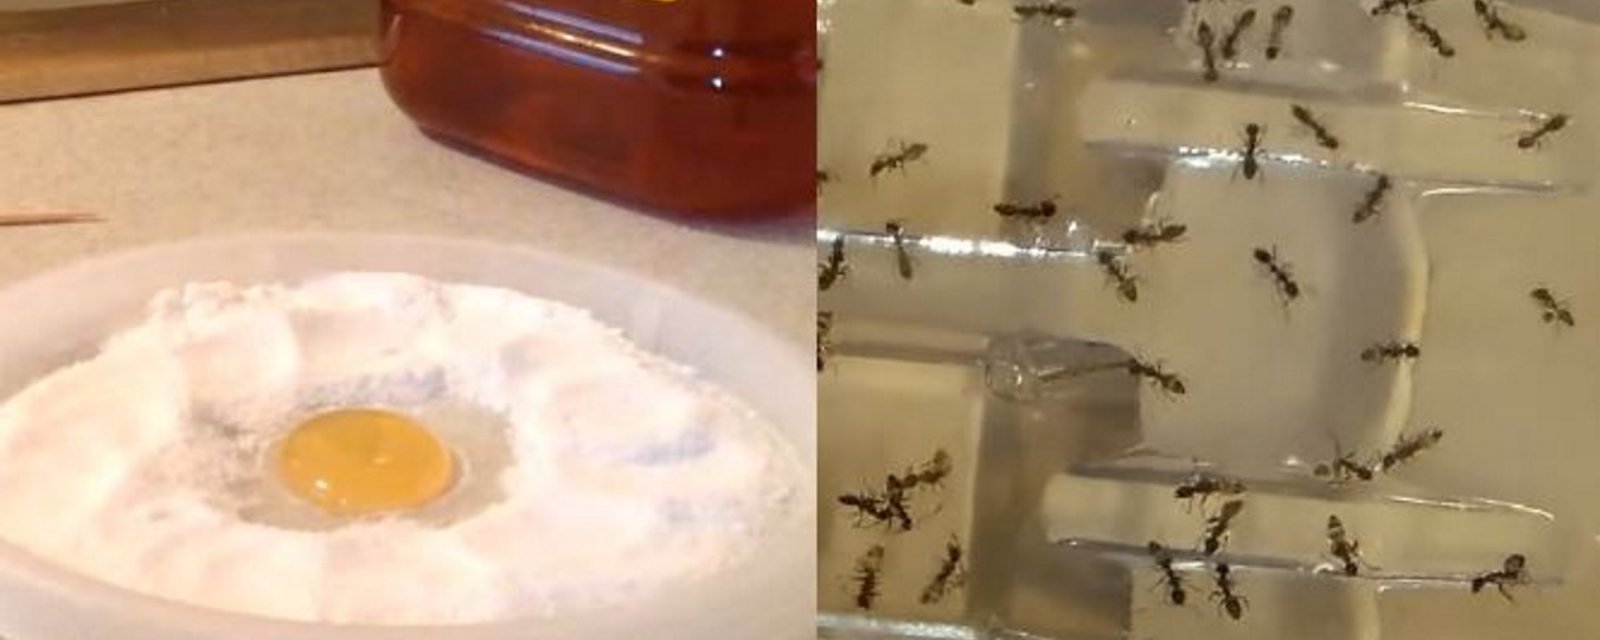 Plus jamais vous verrez une seule fourmi, une puce ou un cafard dans votre maison grâce à cet ingrédient puissant! 